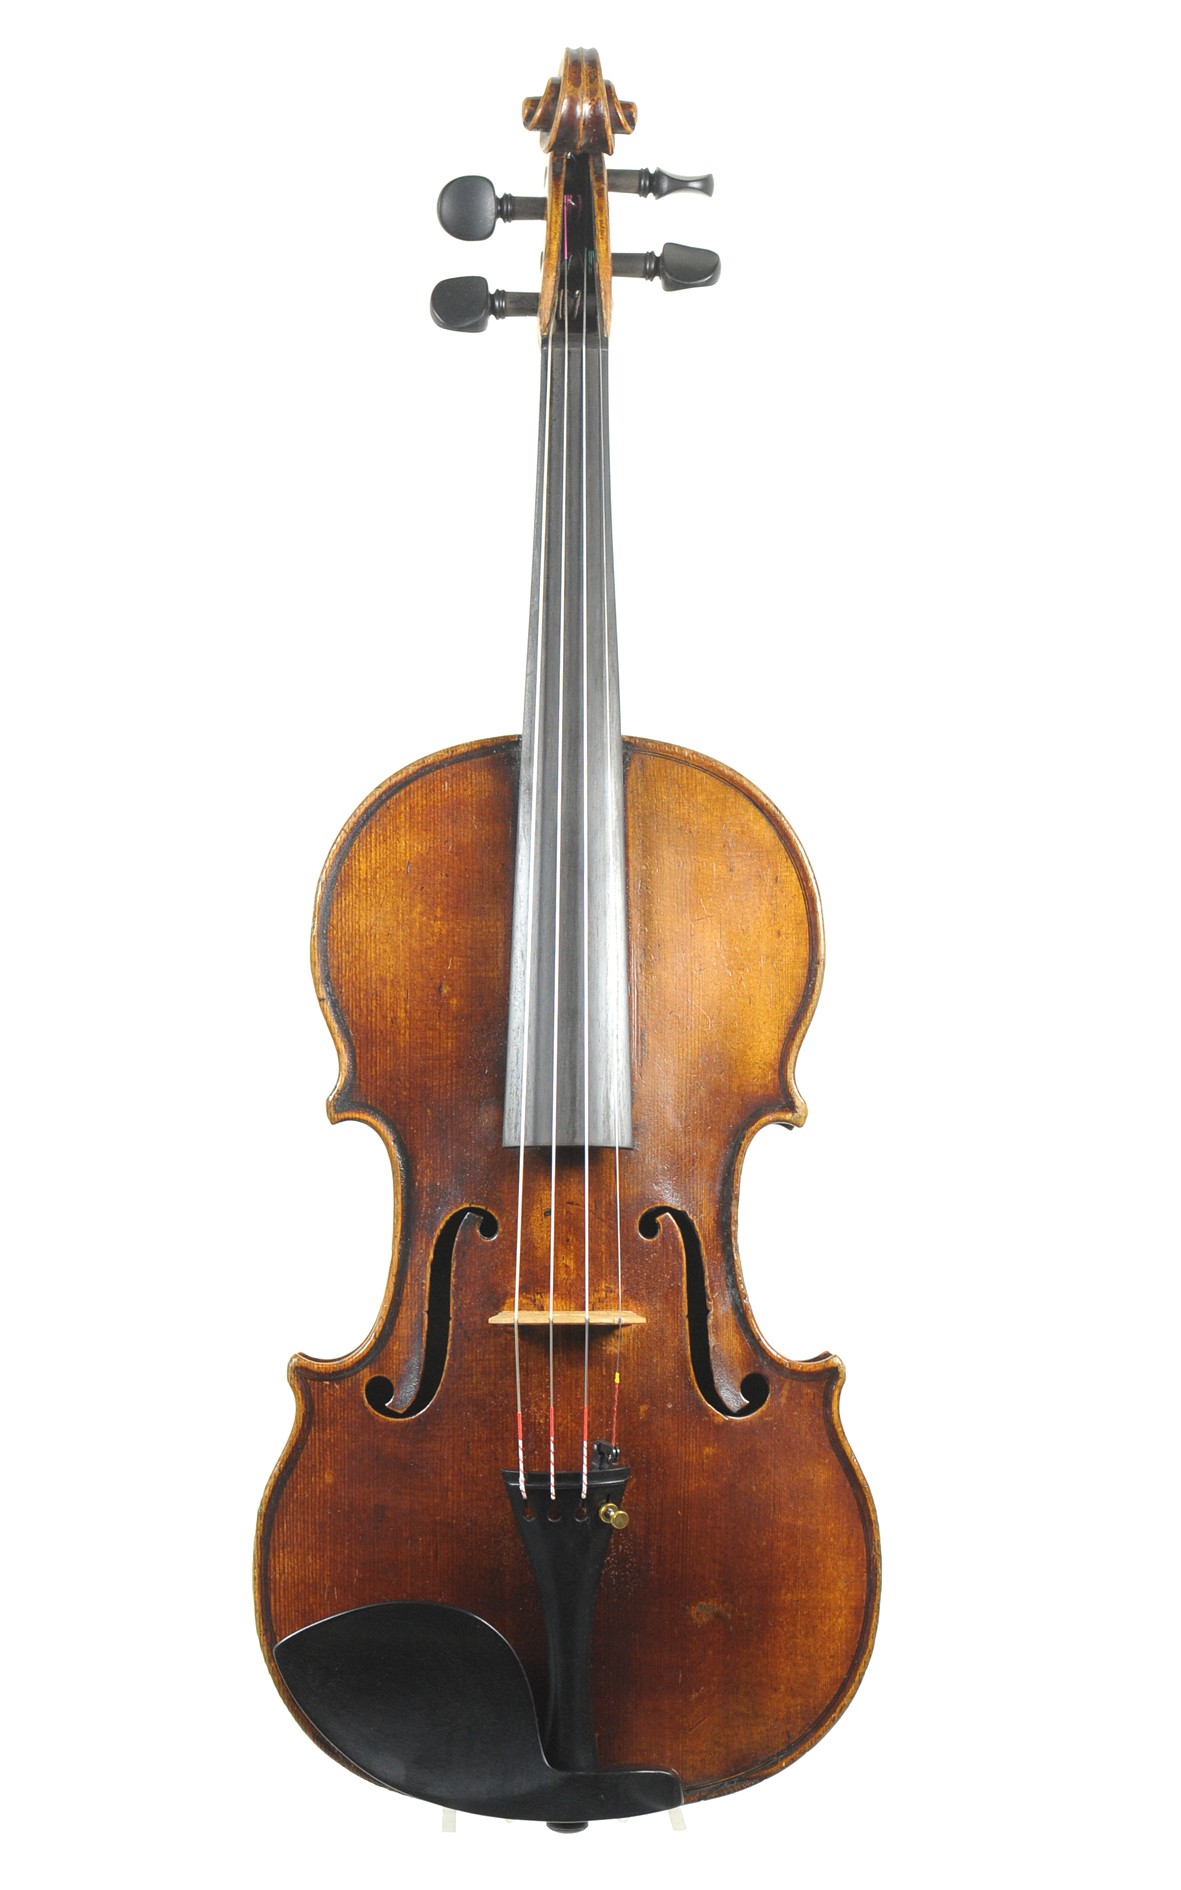 Didier Nicolas: French master violin, approx. 1820 - top